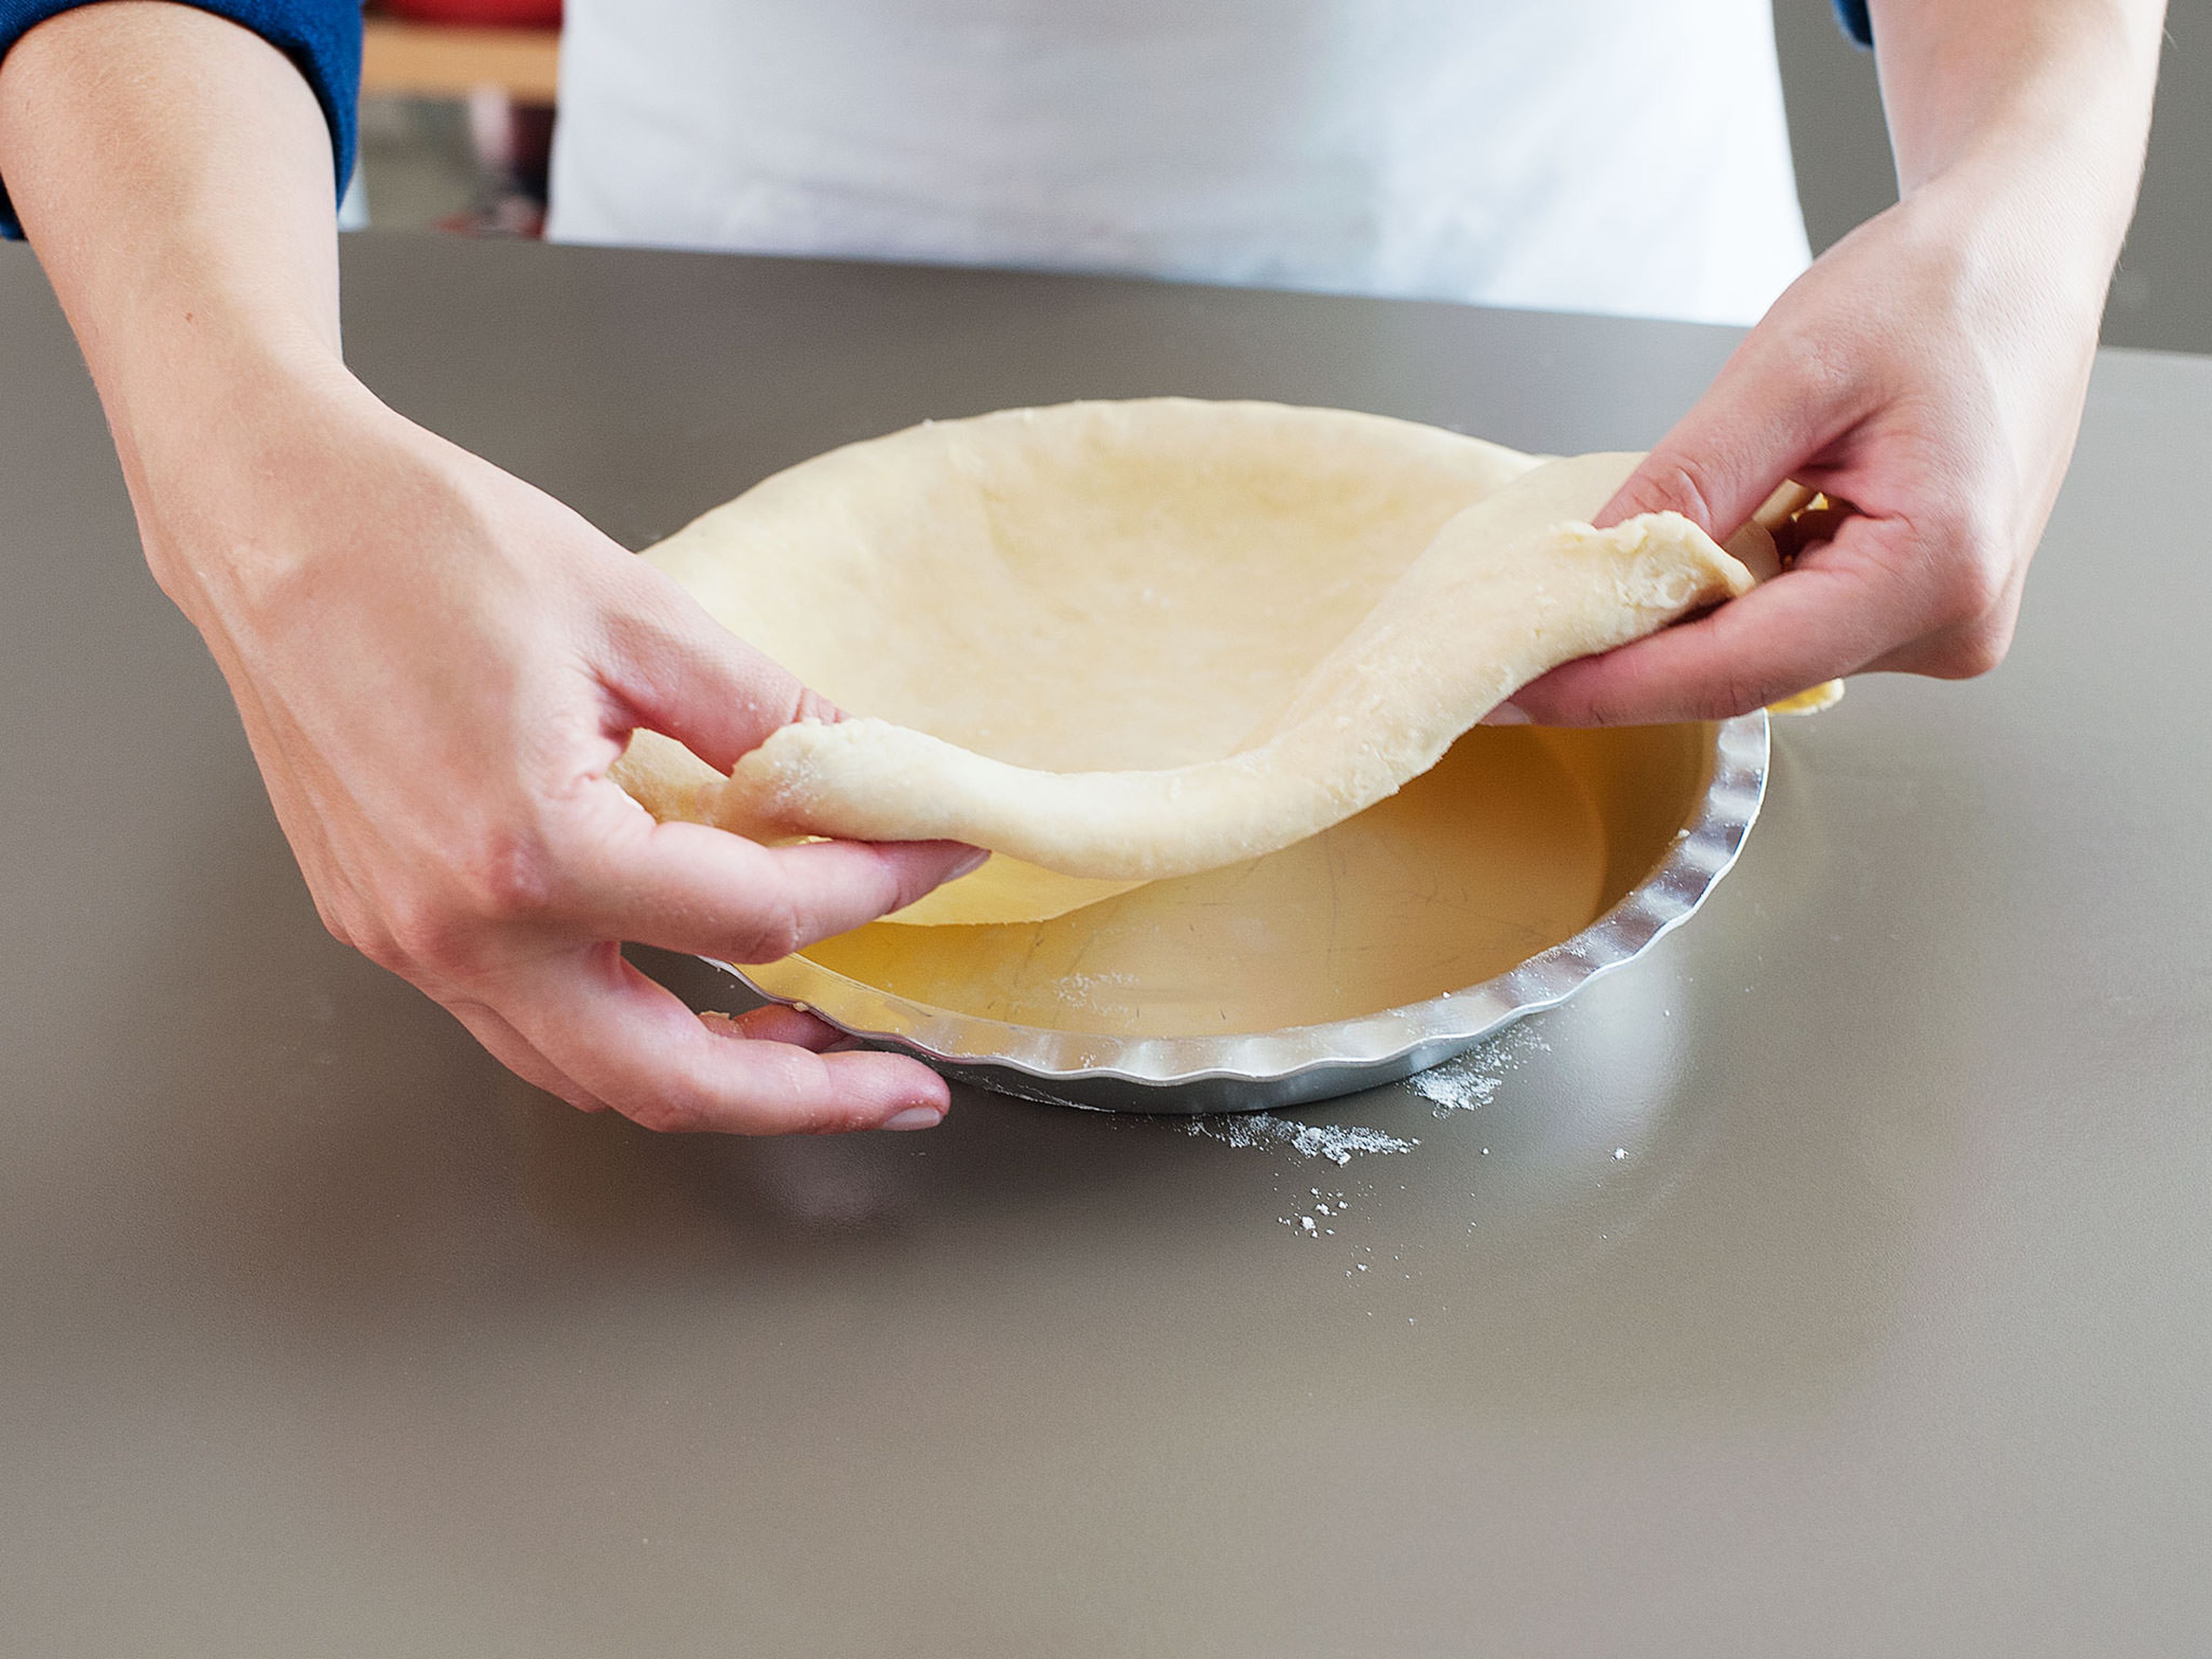 Backofen auf 190°C vorheizen. Pie-Form einfetten. Den Teig aus dem Kühlschrank nehmen und einige Minuten bei Zimmertemperatur aufwärmen. Arbeitsfläche leicht bemehlen und eine Teighälfte zu einem Kreis ausrollen, der ca. 0.5 cm dick ist. Den ausgerollten Teig vorsichtig in die Pie-Form legen, dabei den überstehenden Teig über den Rand der Form hängen lassen. Sauerkirschfüllung auf den Pie-Teig gießen.